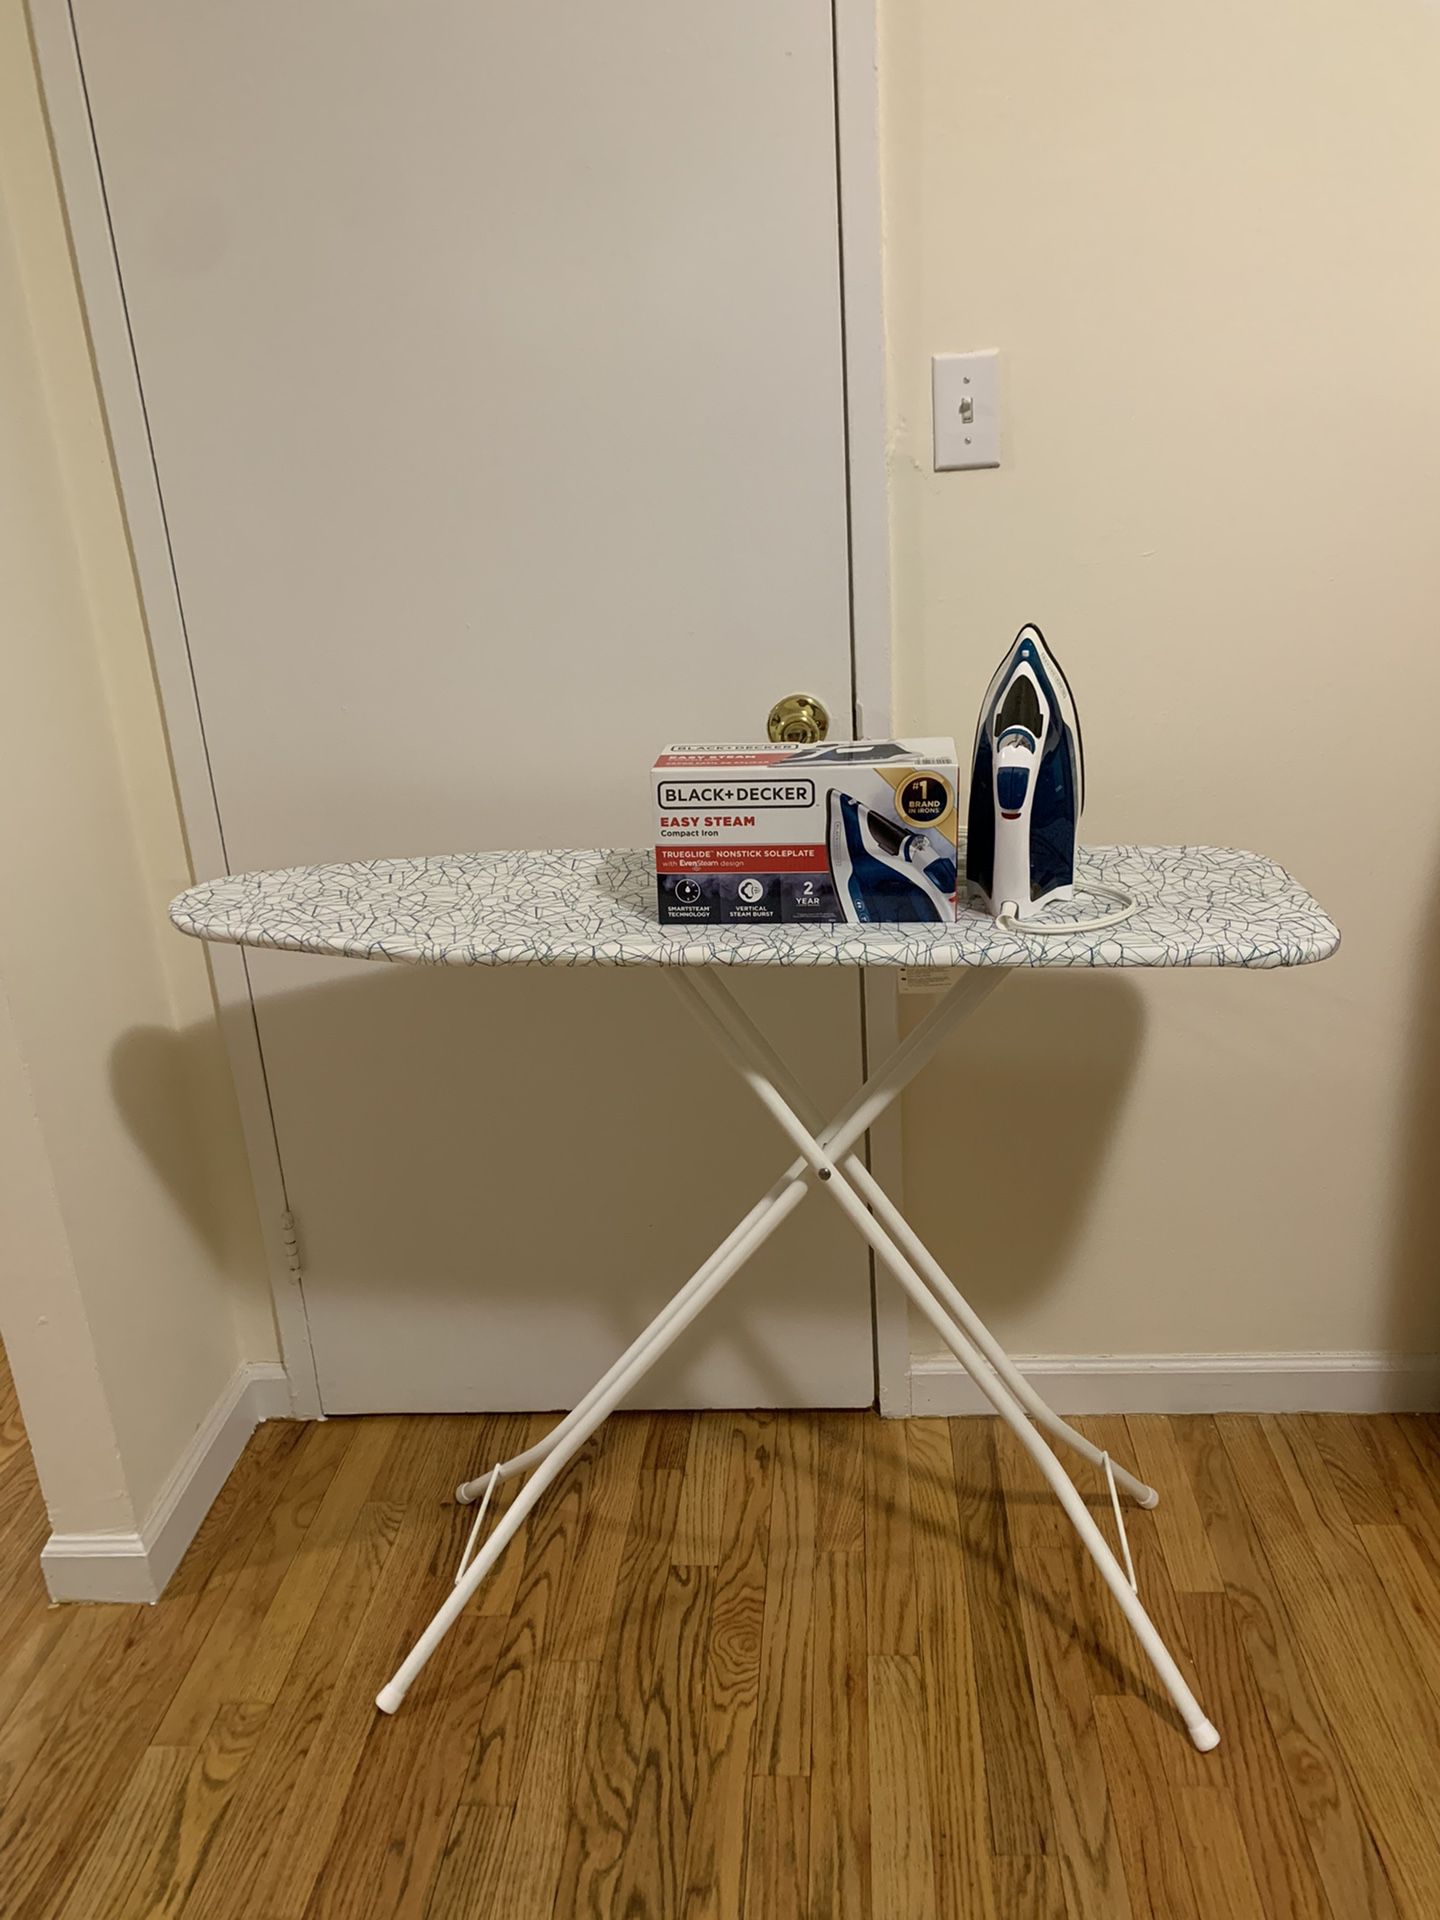 RUTER ironing board, white, 42 ½x13 - IKEA